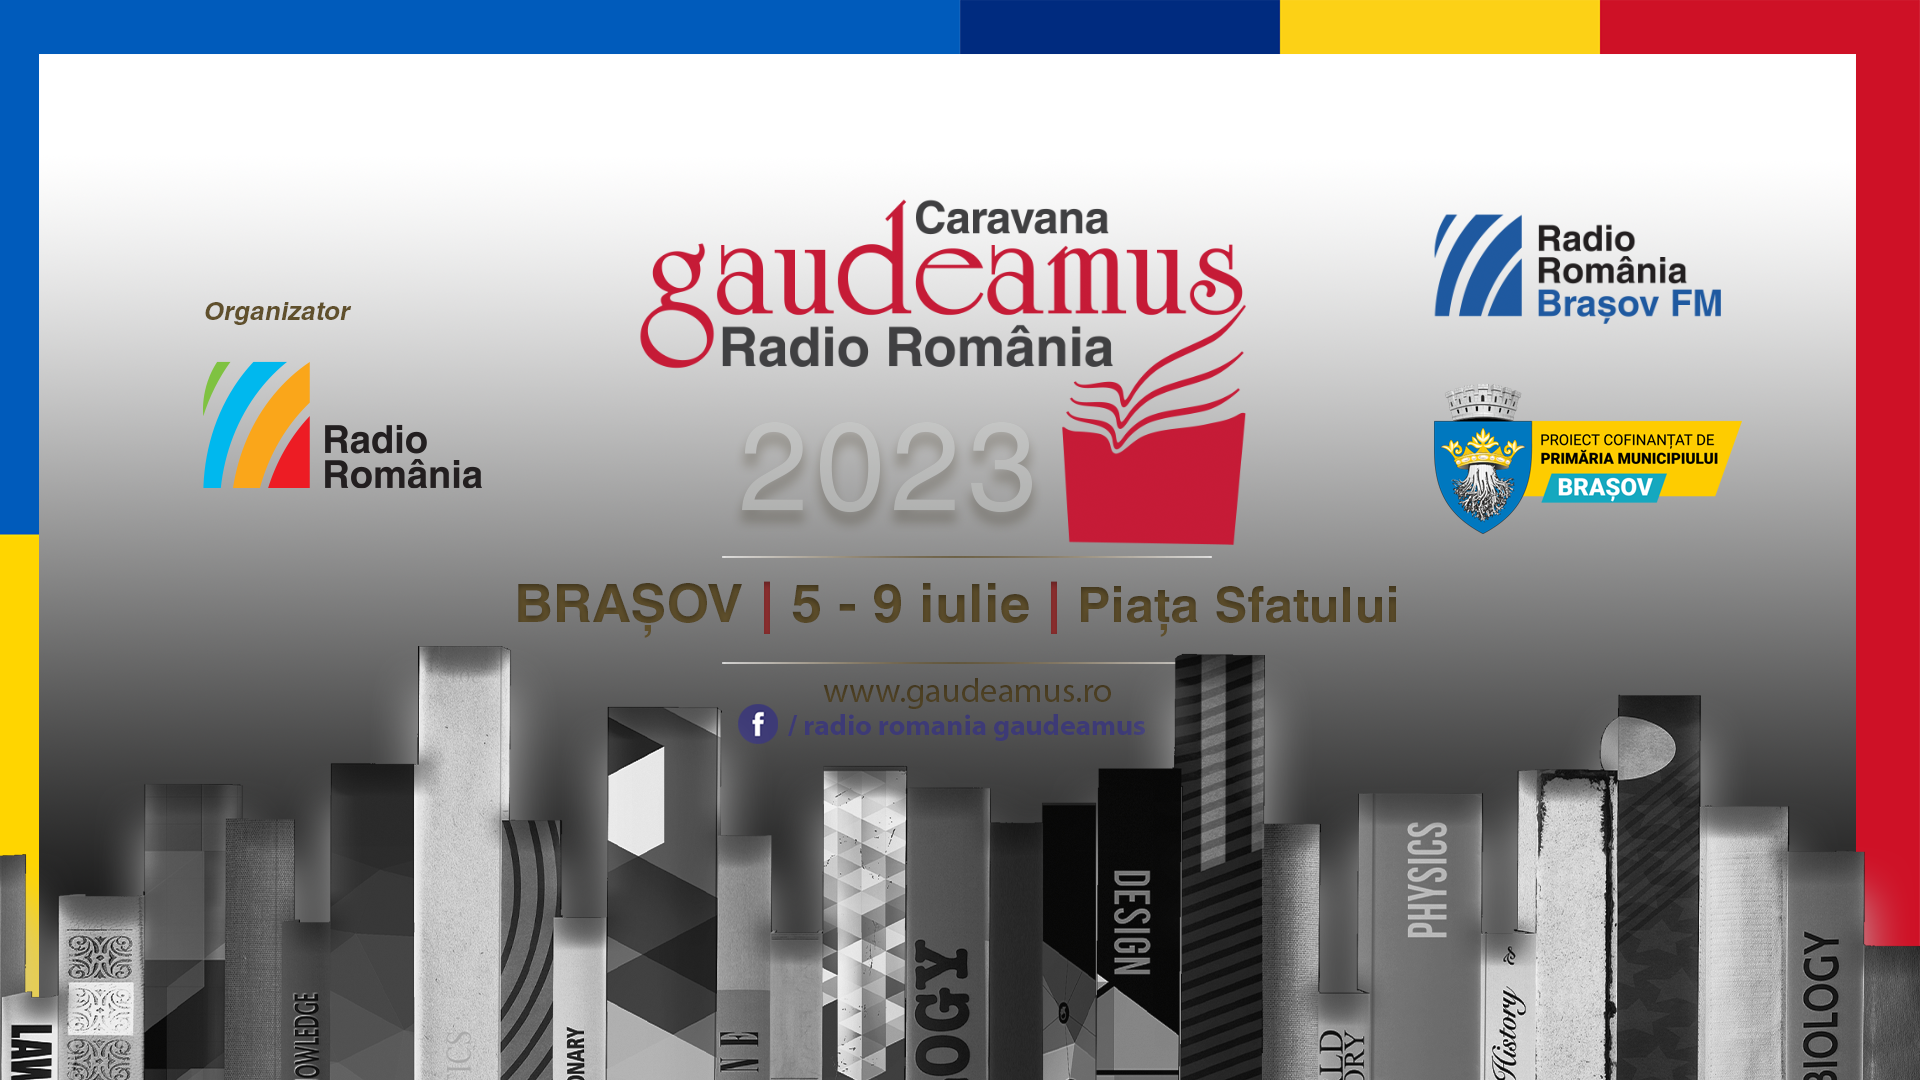 BRAȘOV: Caravana Gaudeamus Radio România, în Piața Sfatului